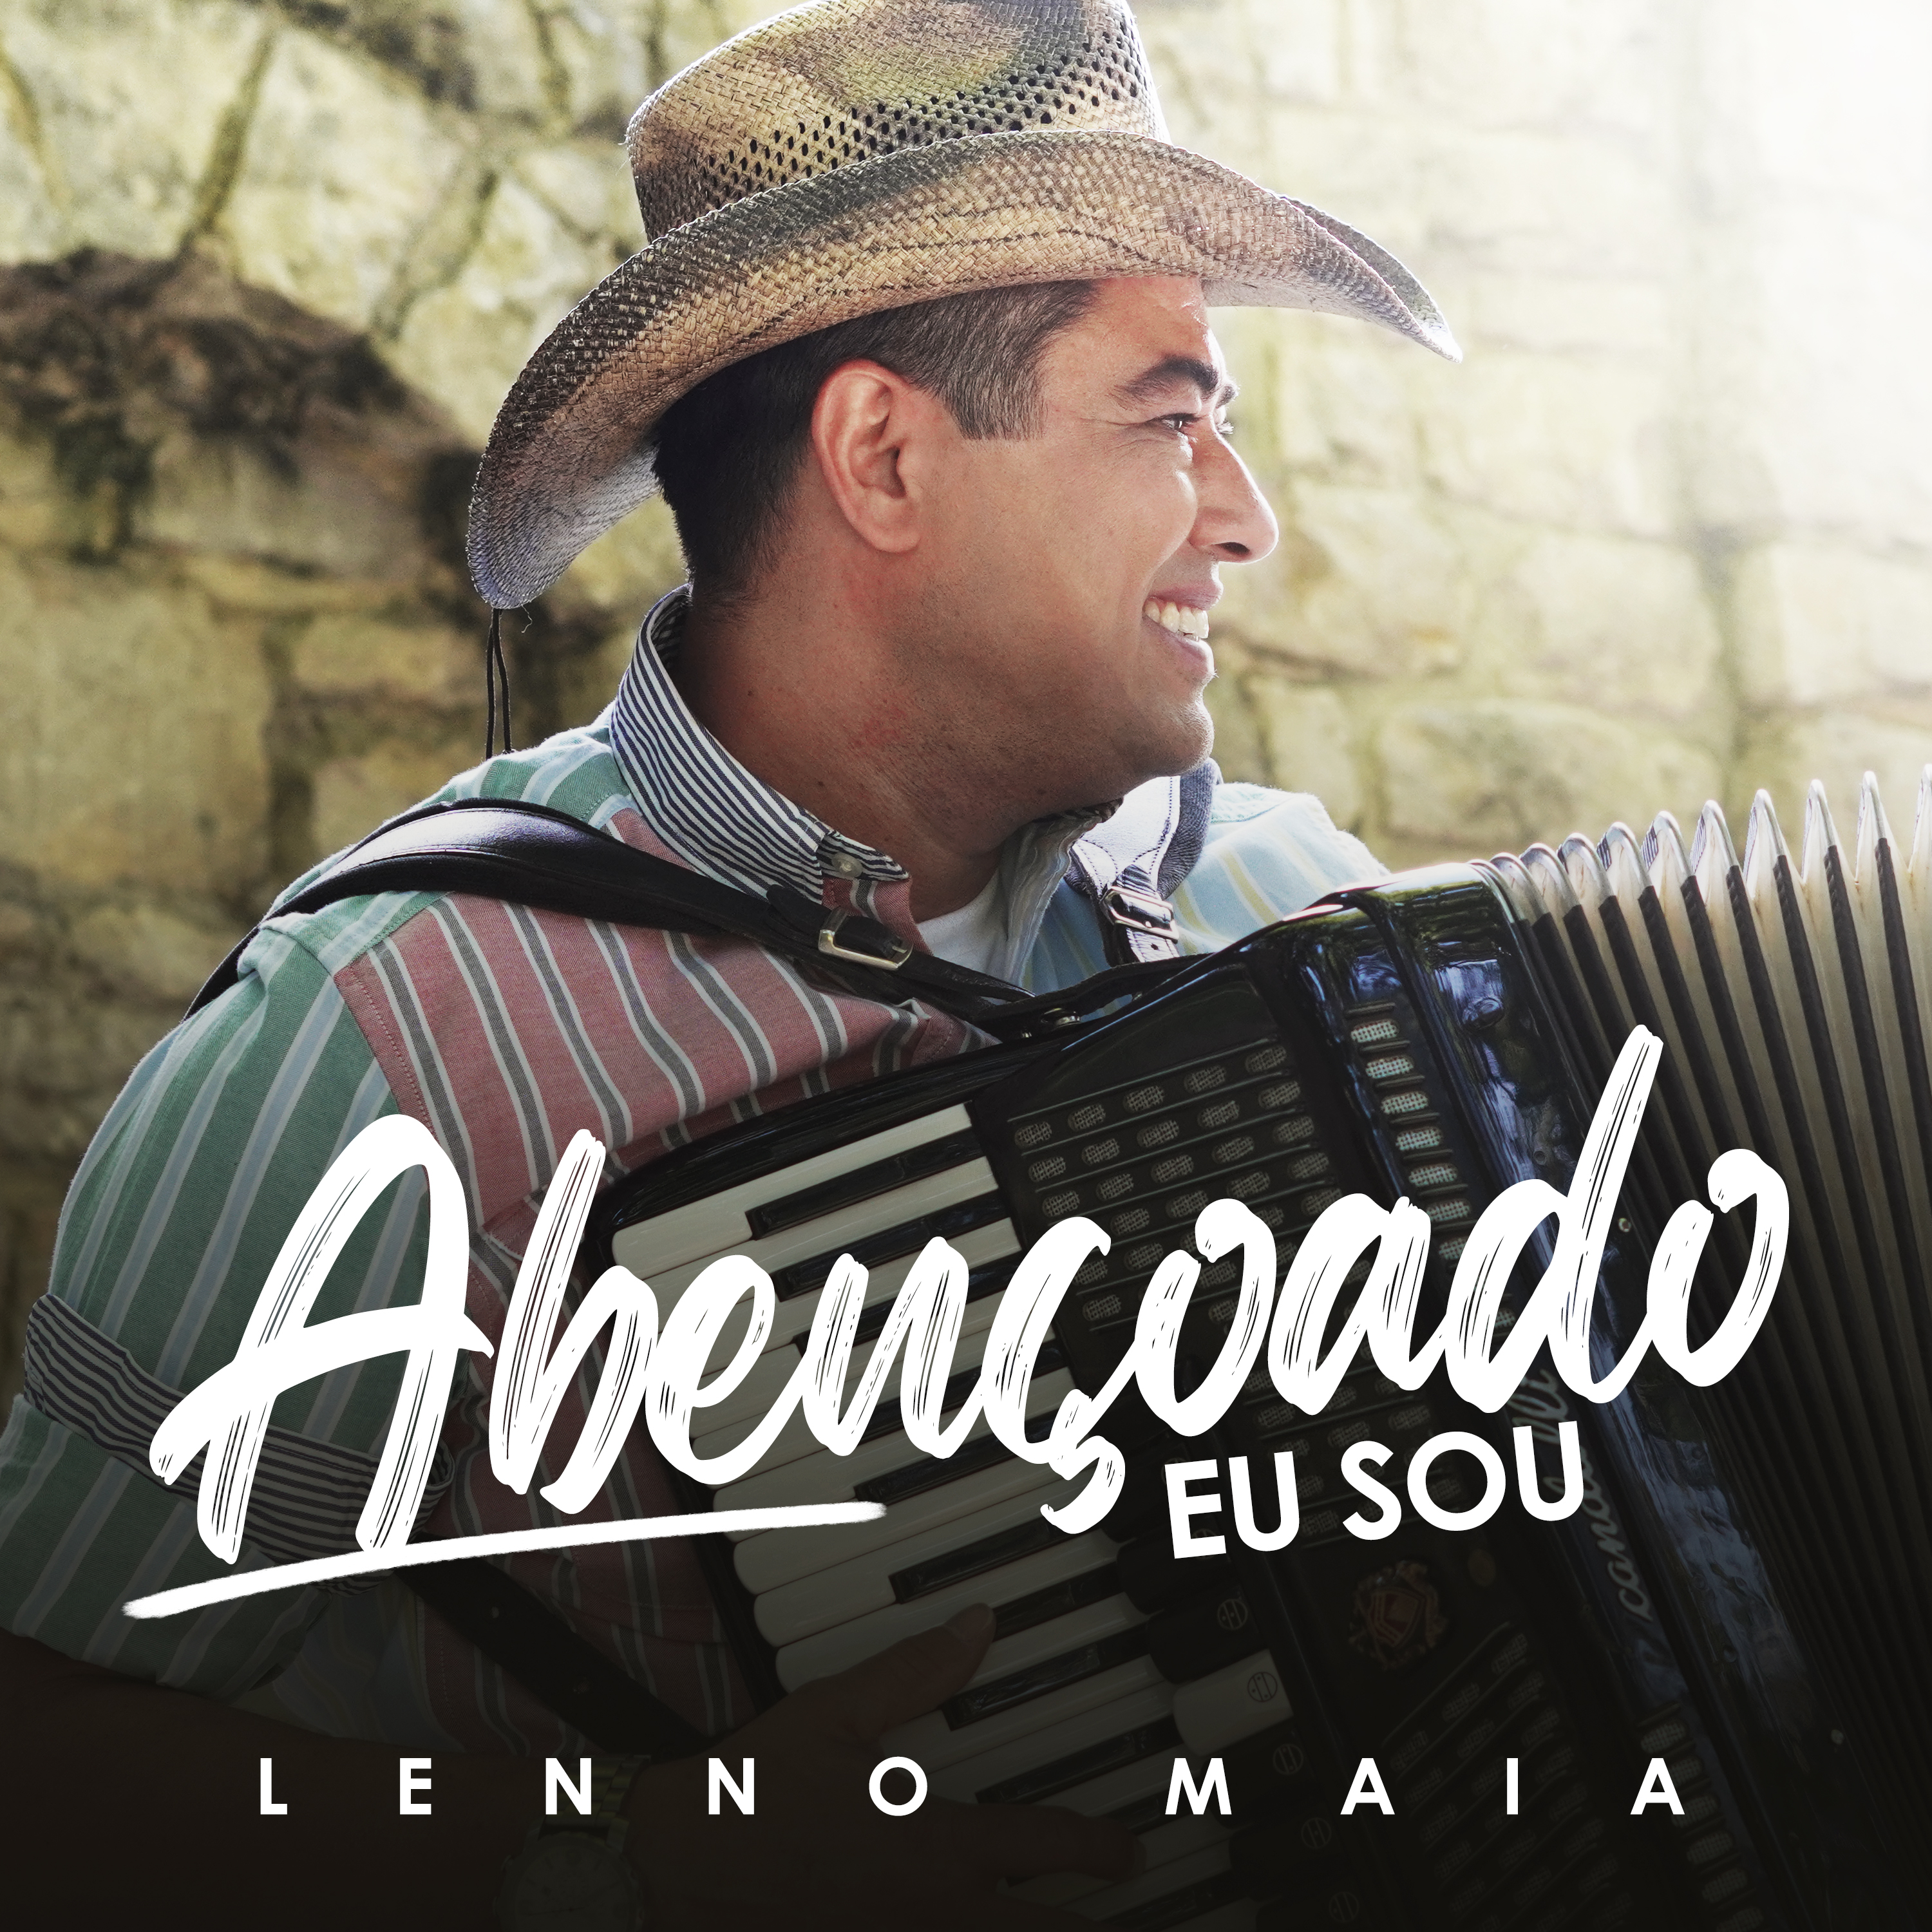 “Abençoado eu sou”, sertanejo Lenno Maia declara bênção em mais uma canção autoral